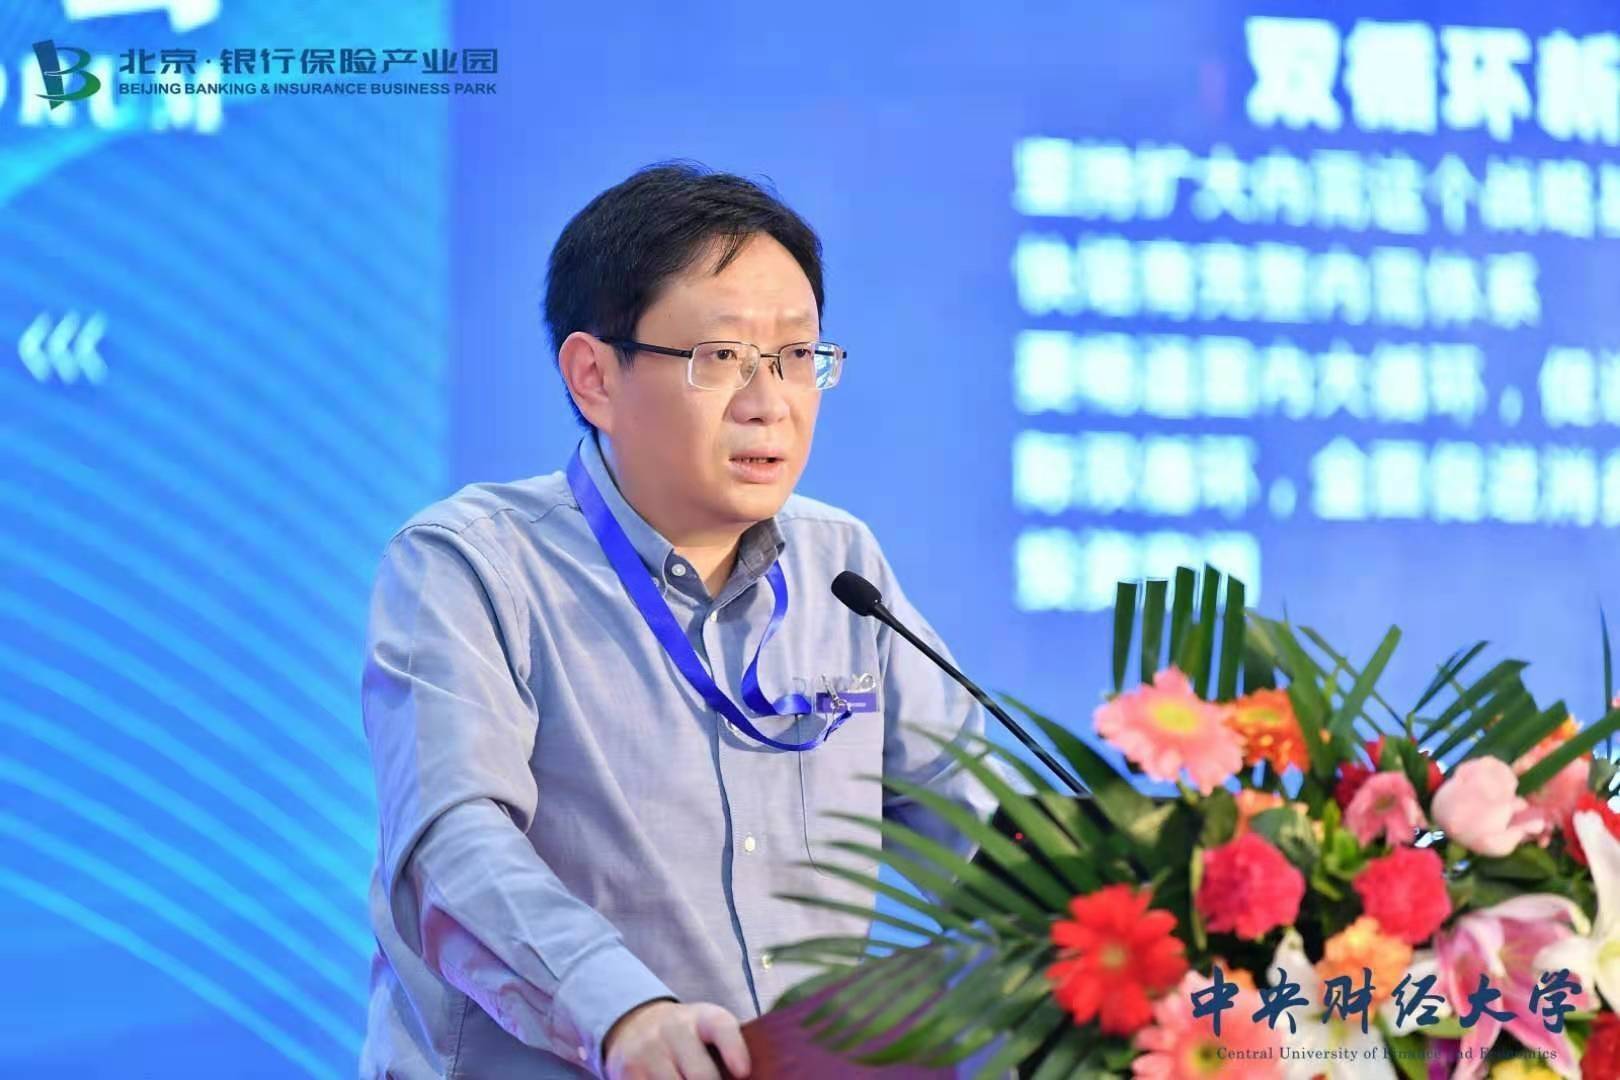 头衔:上海金融发展实验室主任曾刚:未来银行资金结构可能会有所调整